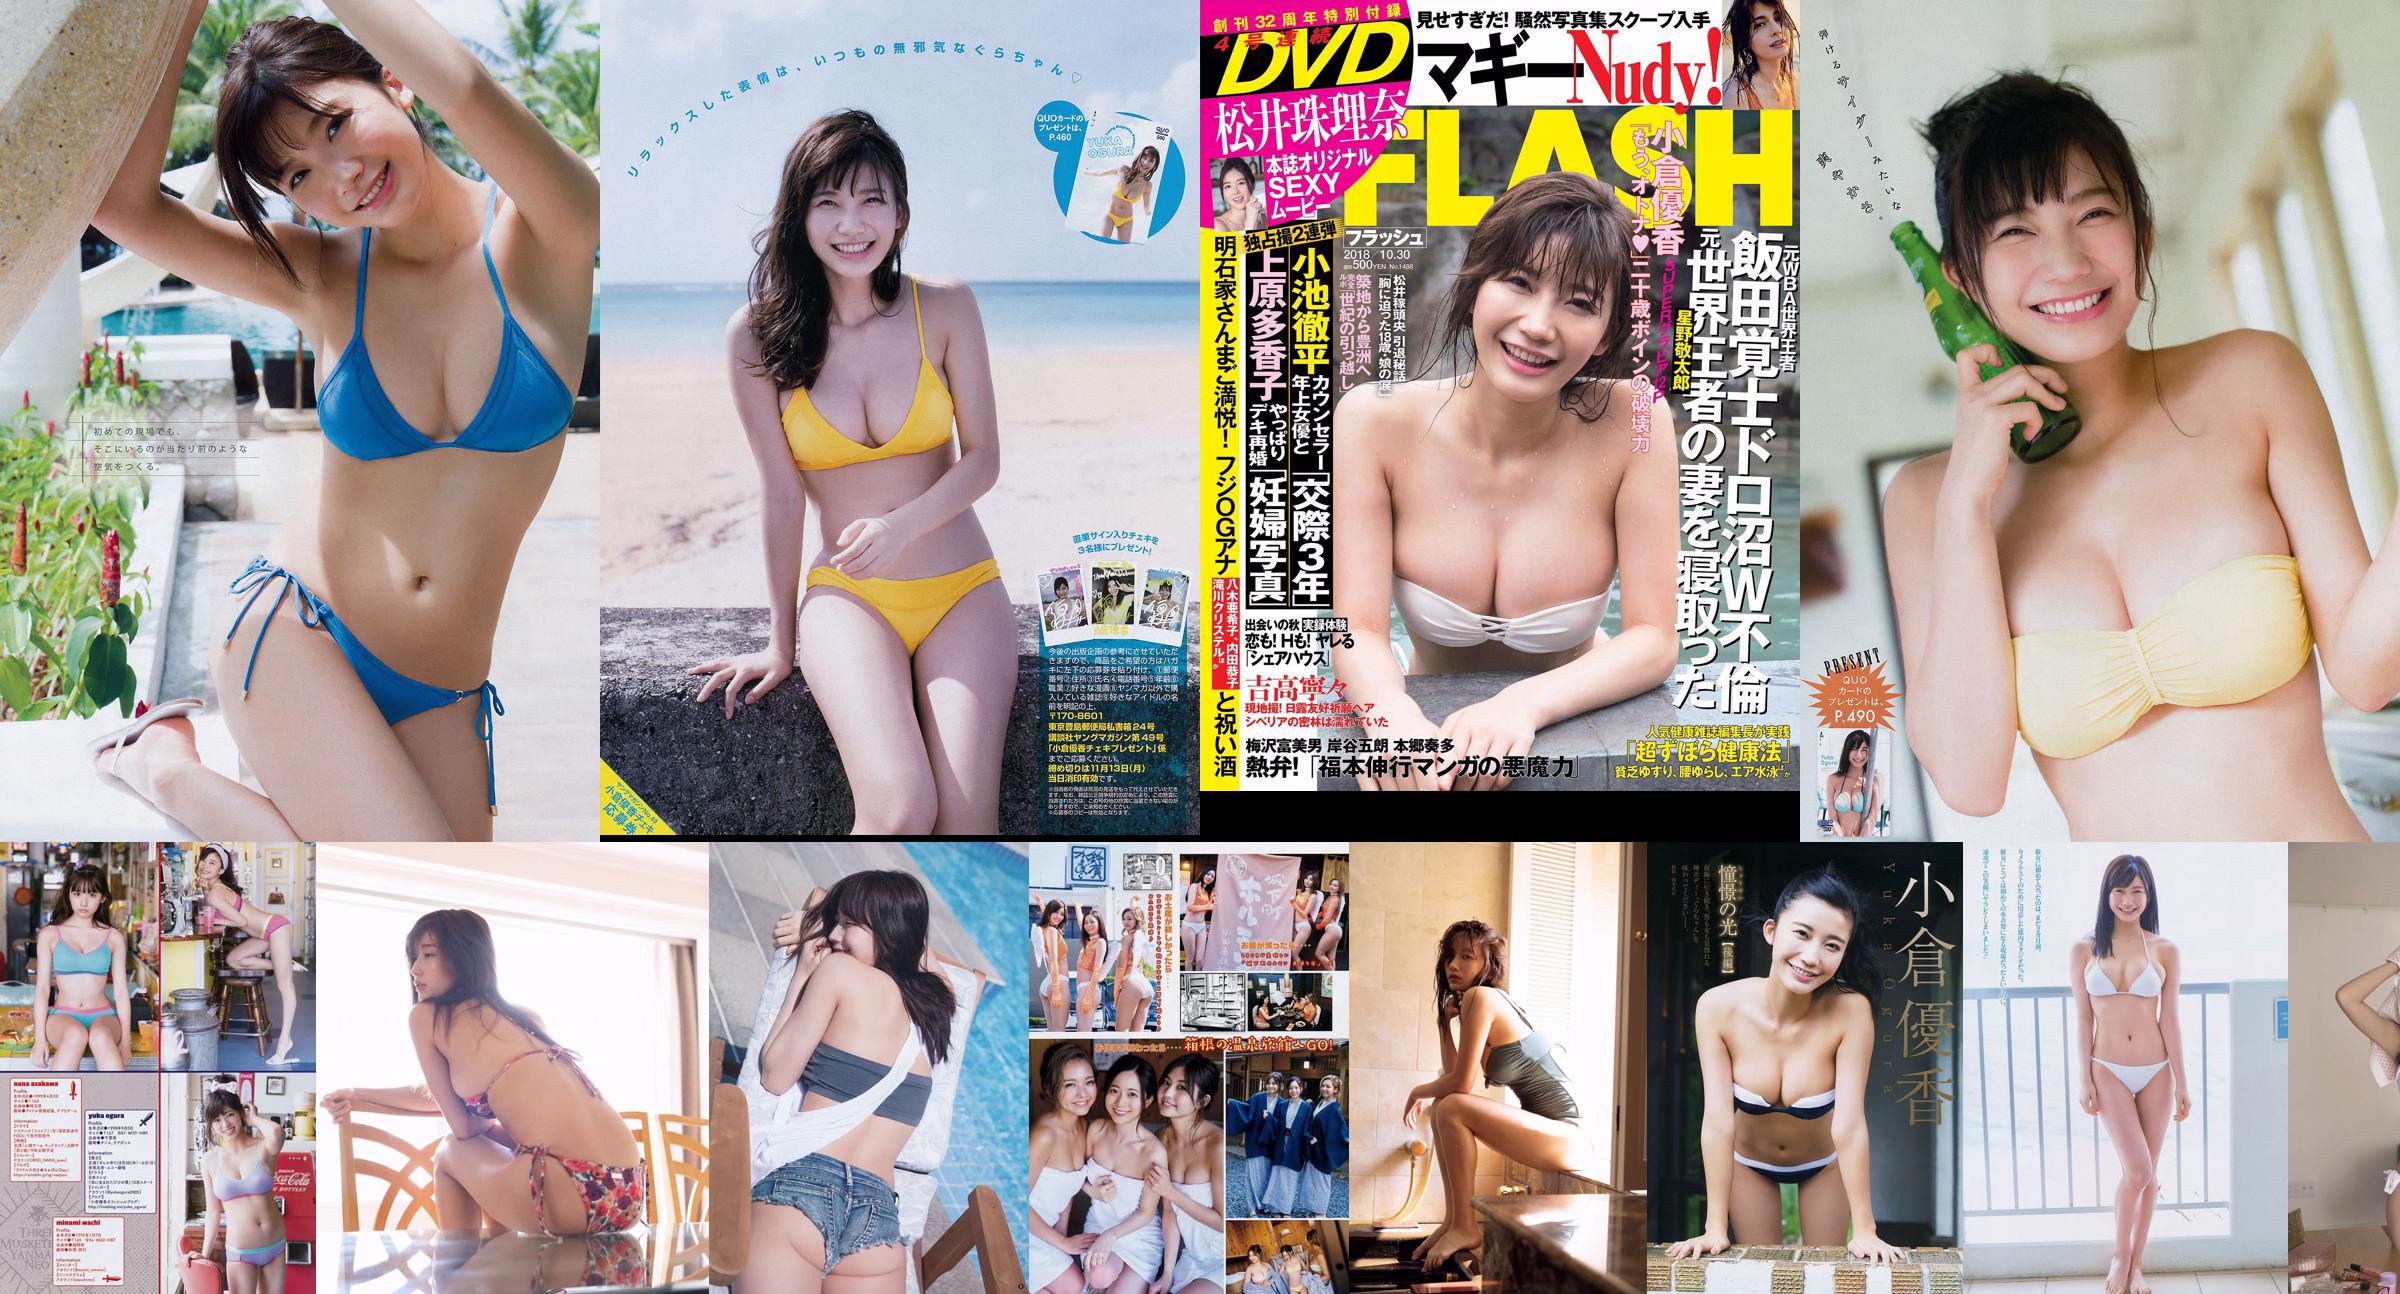 [Young Magazine] Yuka Ogura 2018 Nr. 21-22 Foto No.89f29b Seite 1